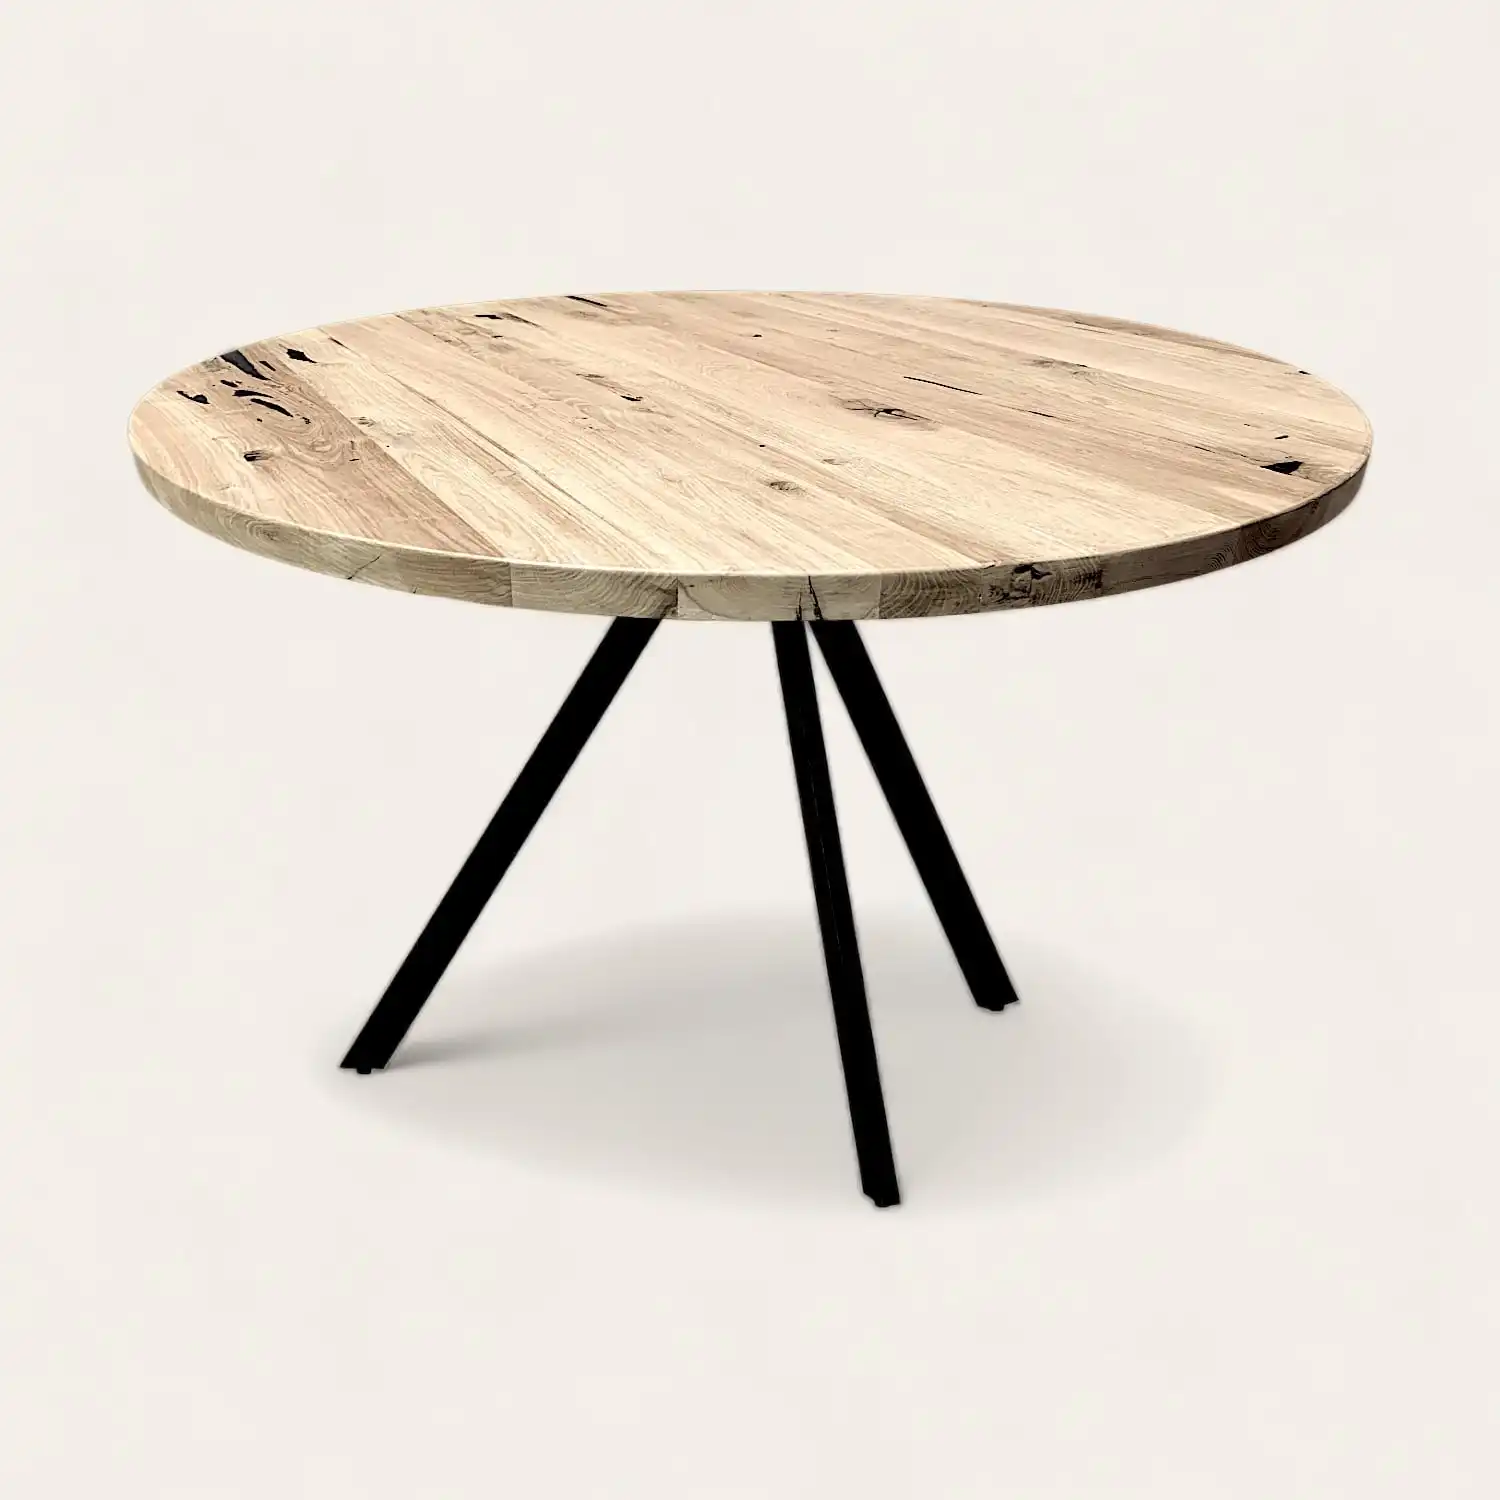  Une table ronde en vieux bois avec des pieds noirs sur fond blanc. 